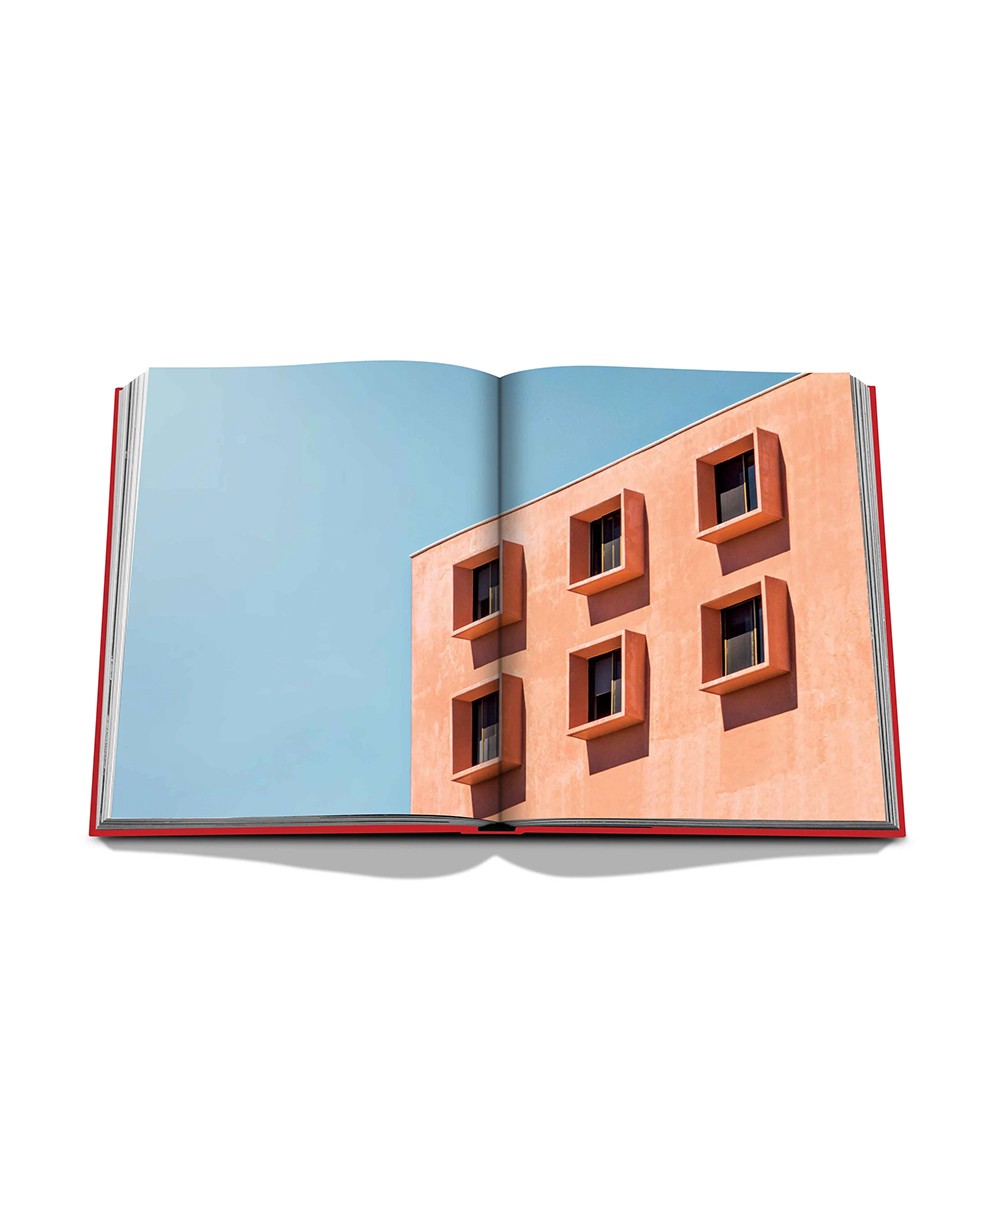 Aufgeschlagene Seite des Coffee Table Books „Bauhaus Style“ von Assouline im RAUM concept store 